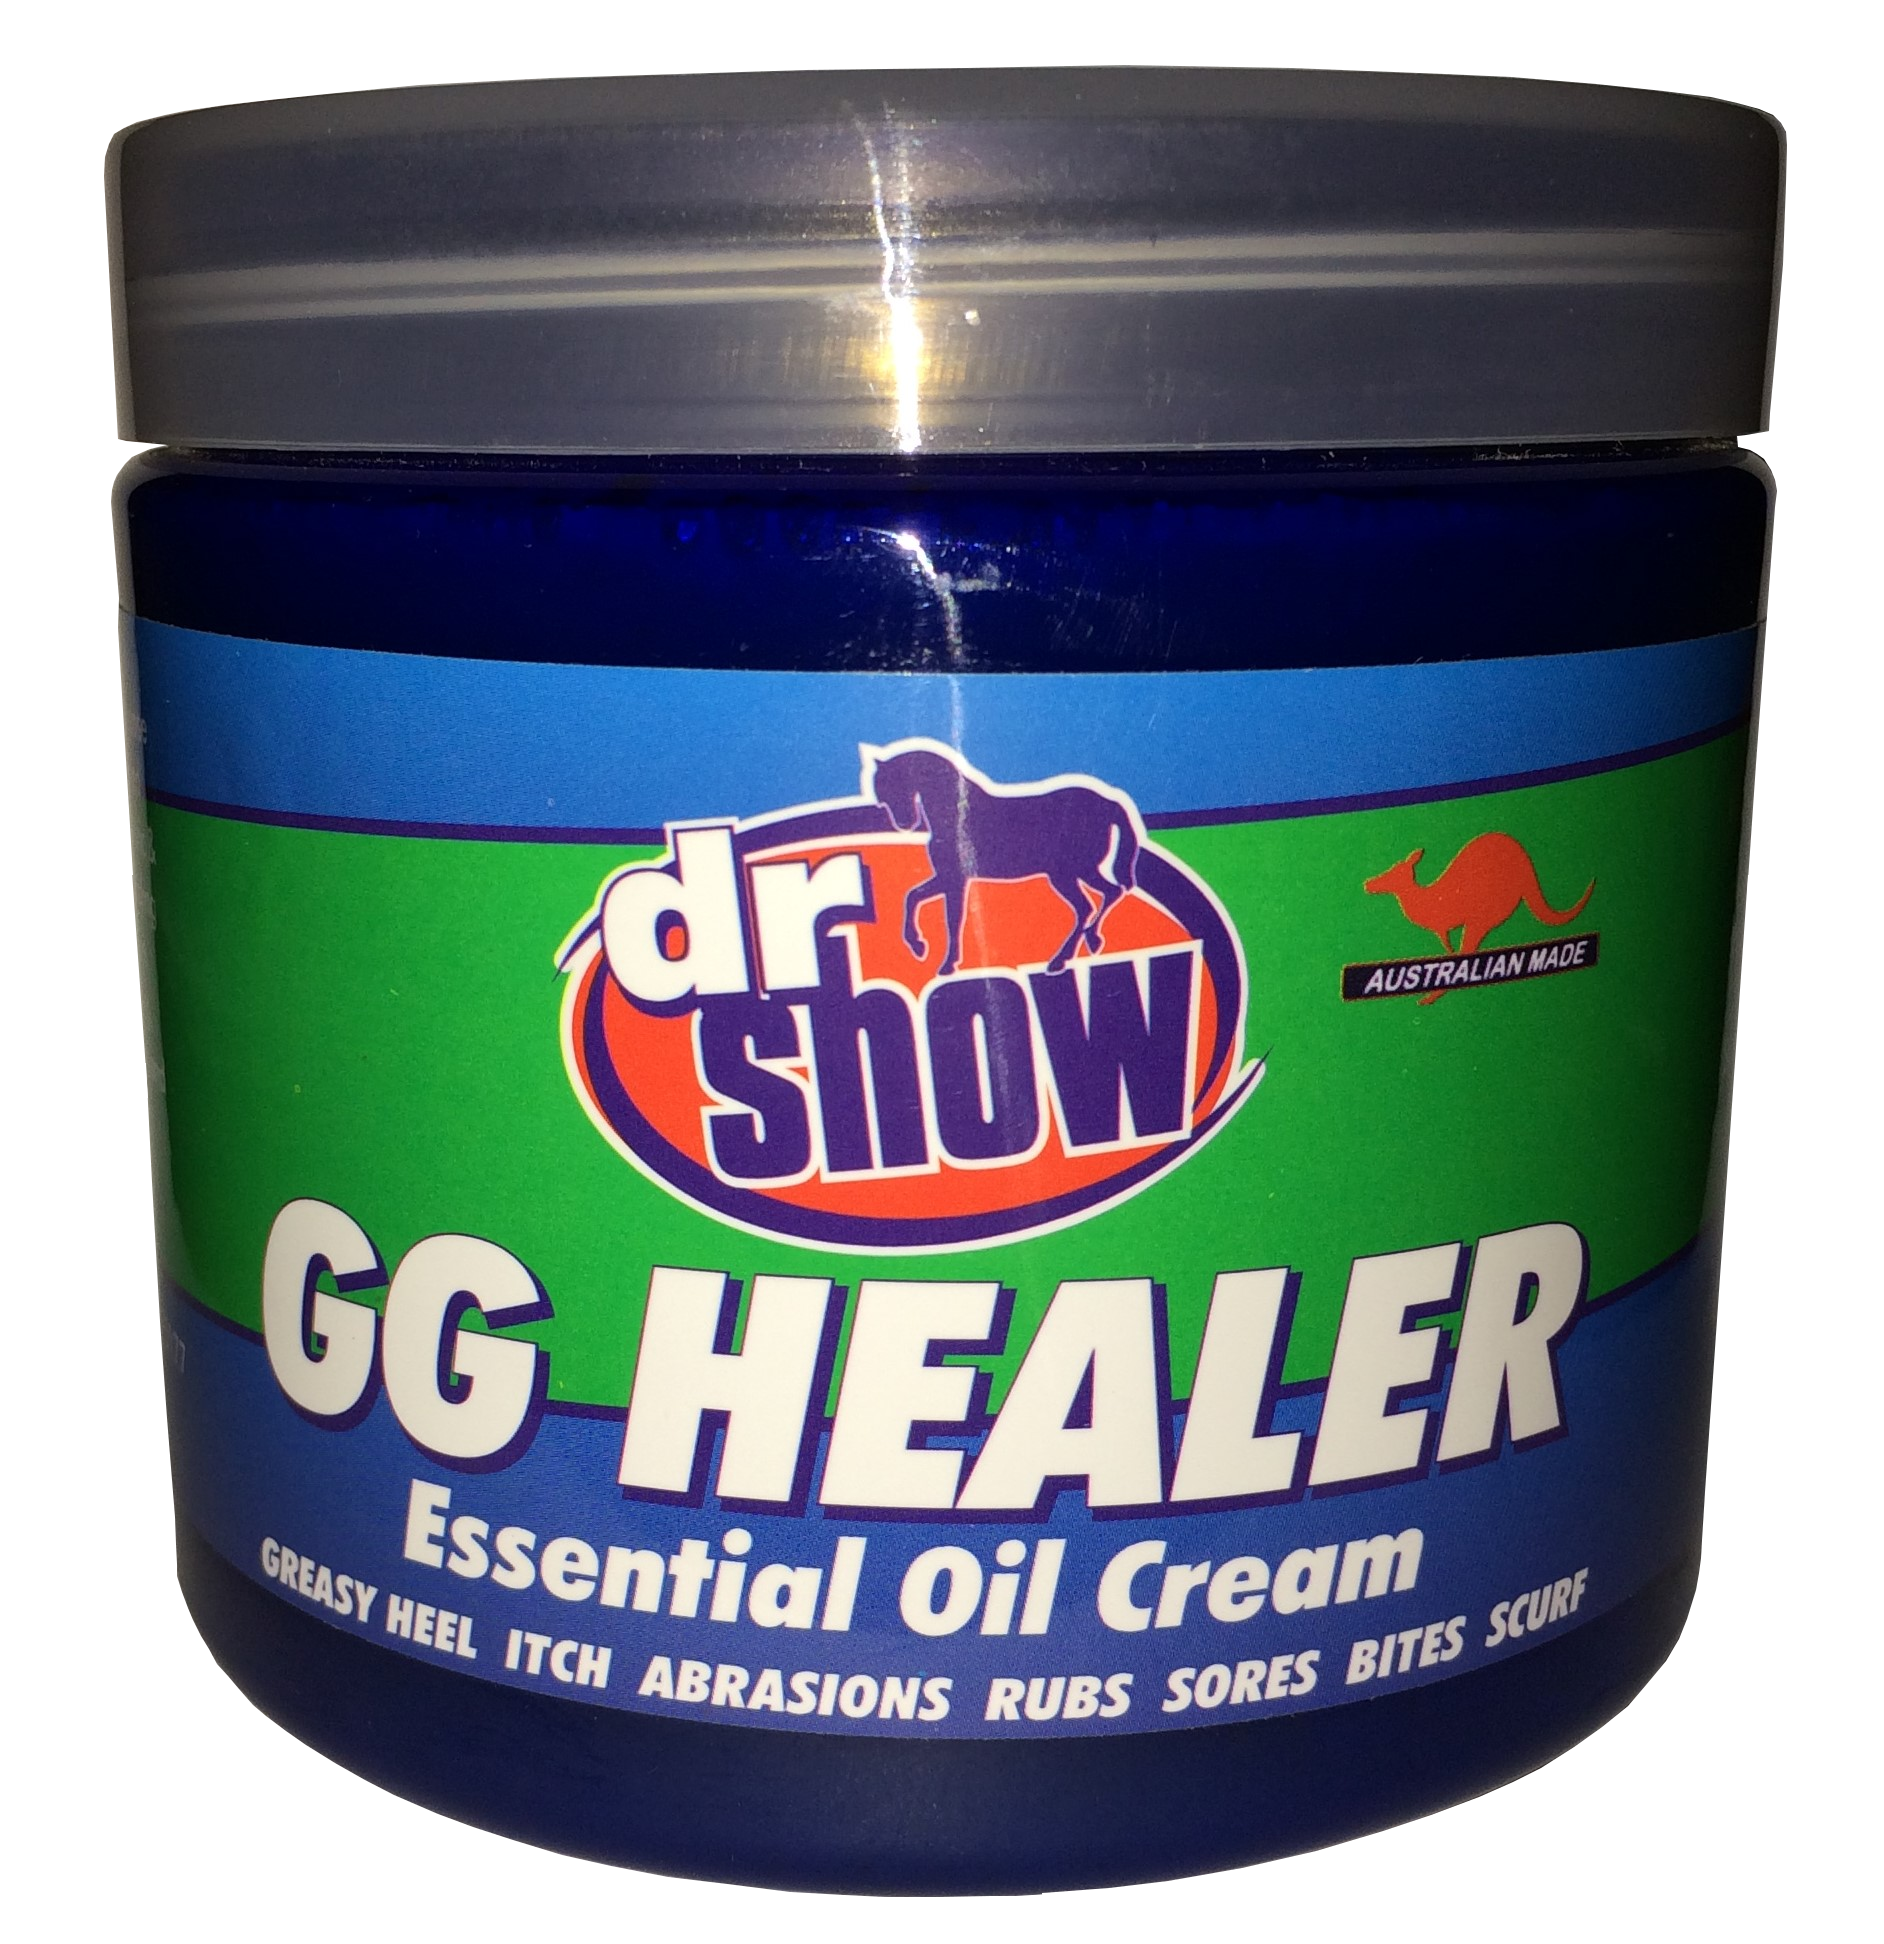 Dr Show GG Healer 